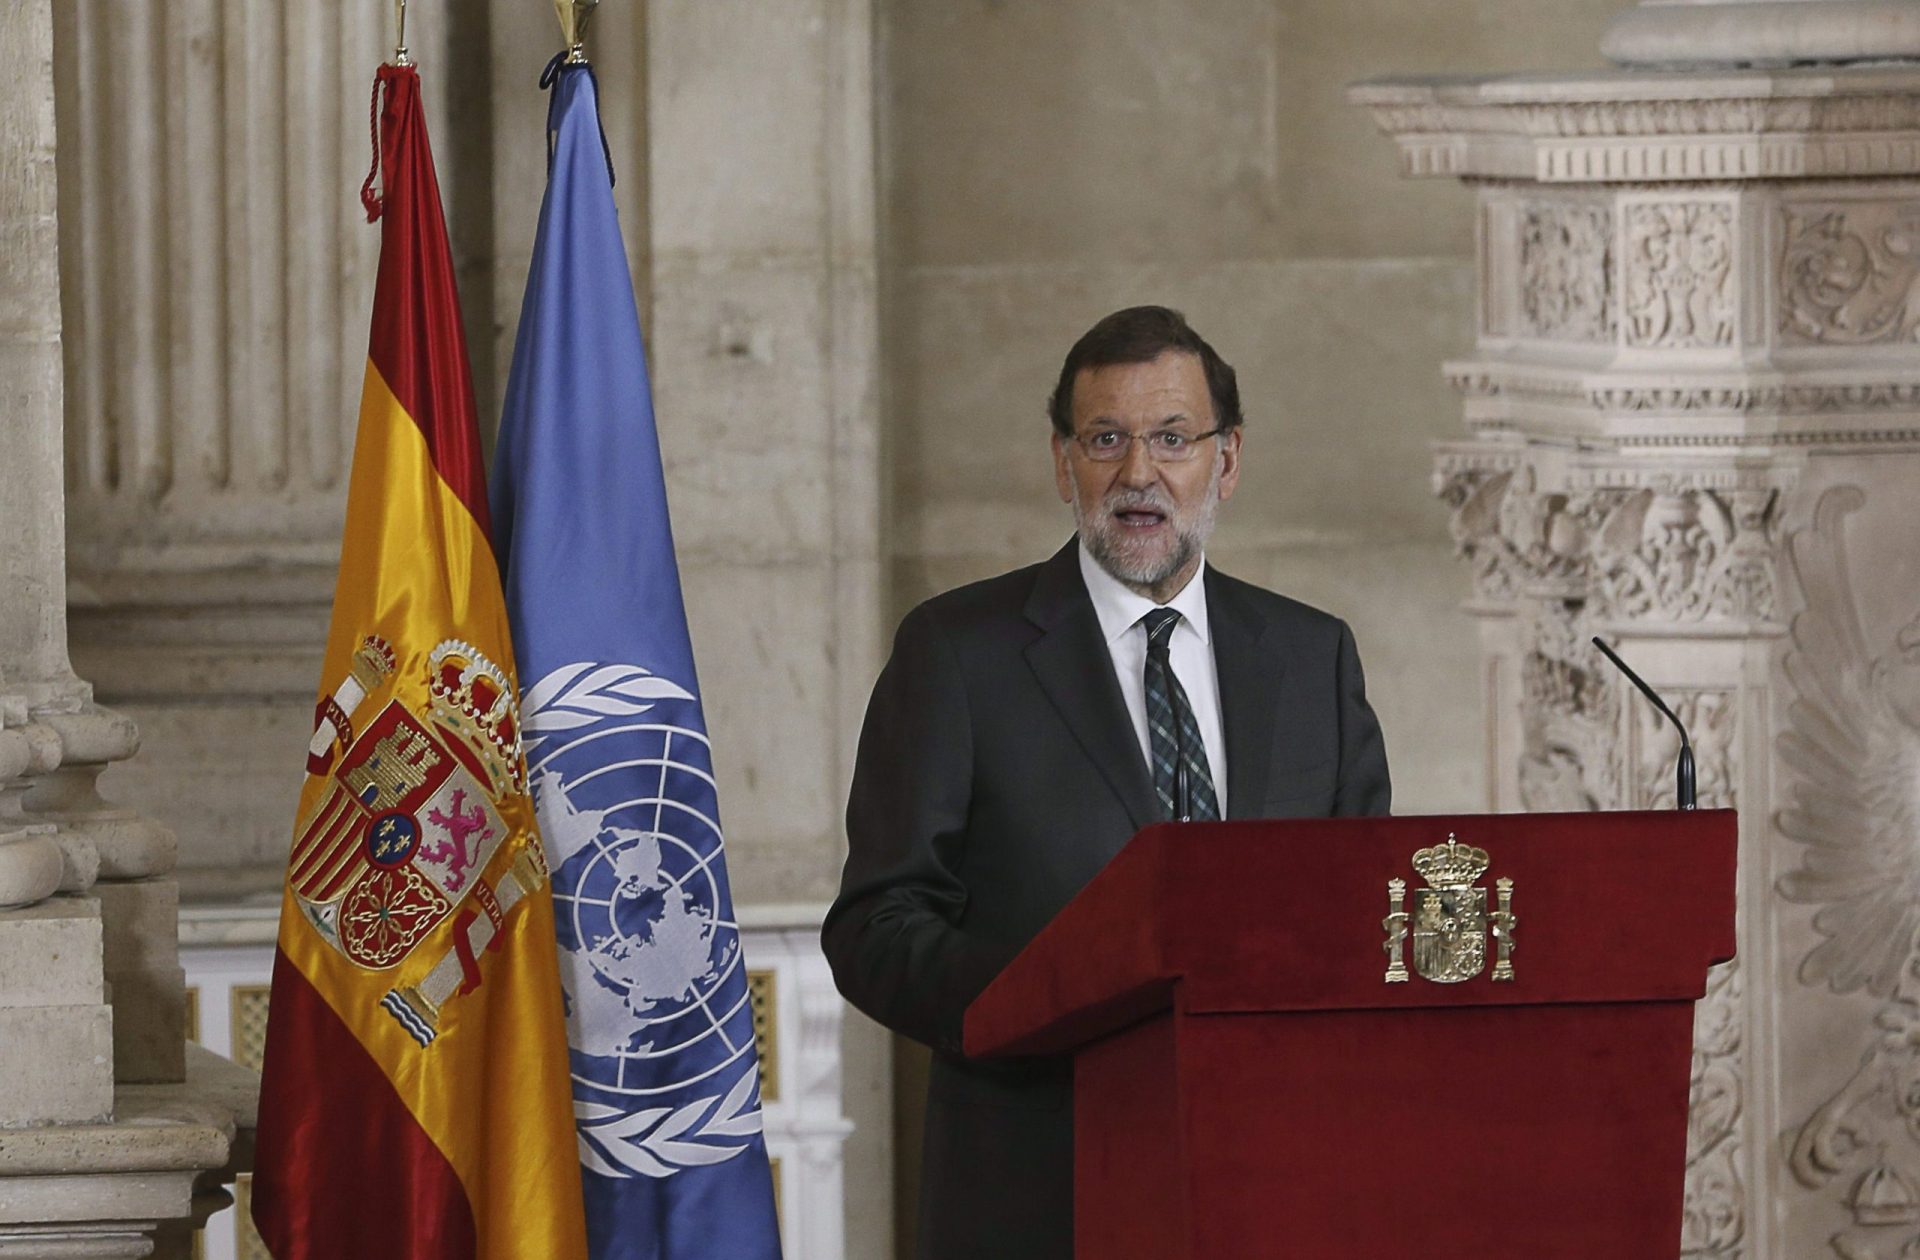 Rajoy volta a criticar projecto de independência da Catalunha